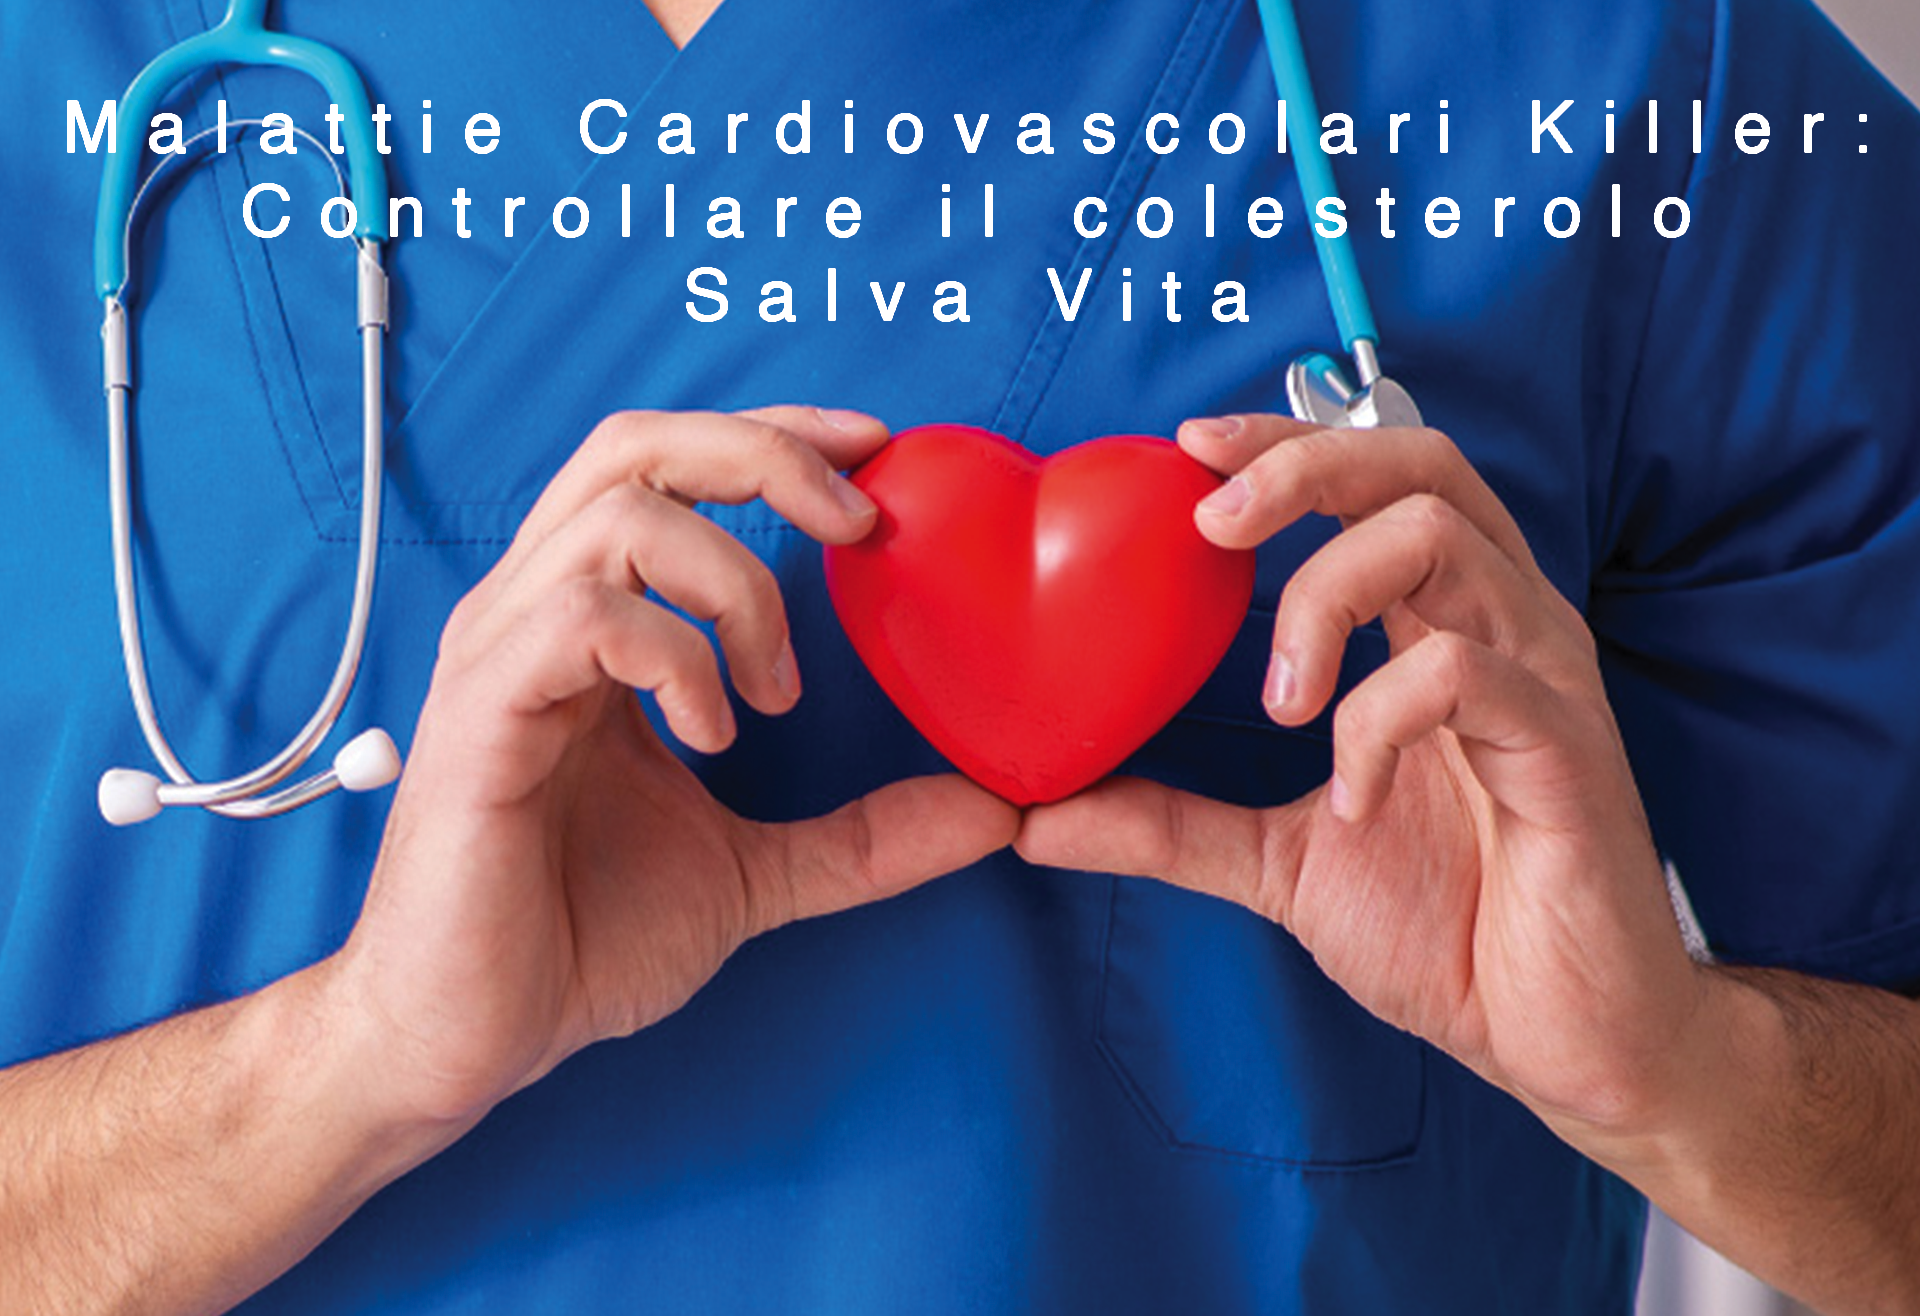 Malattie Cardiovascolari Killer: Controllare il colesterolo Salva Vita